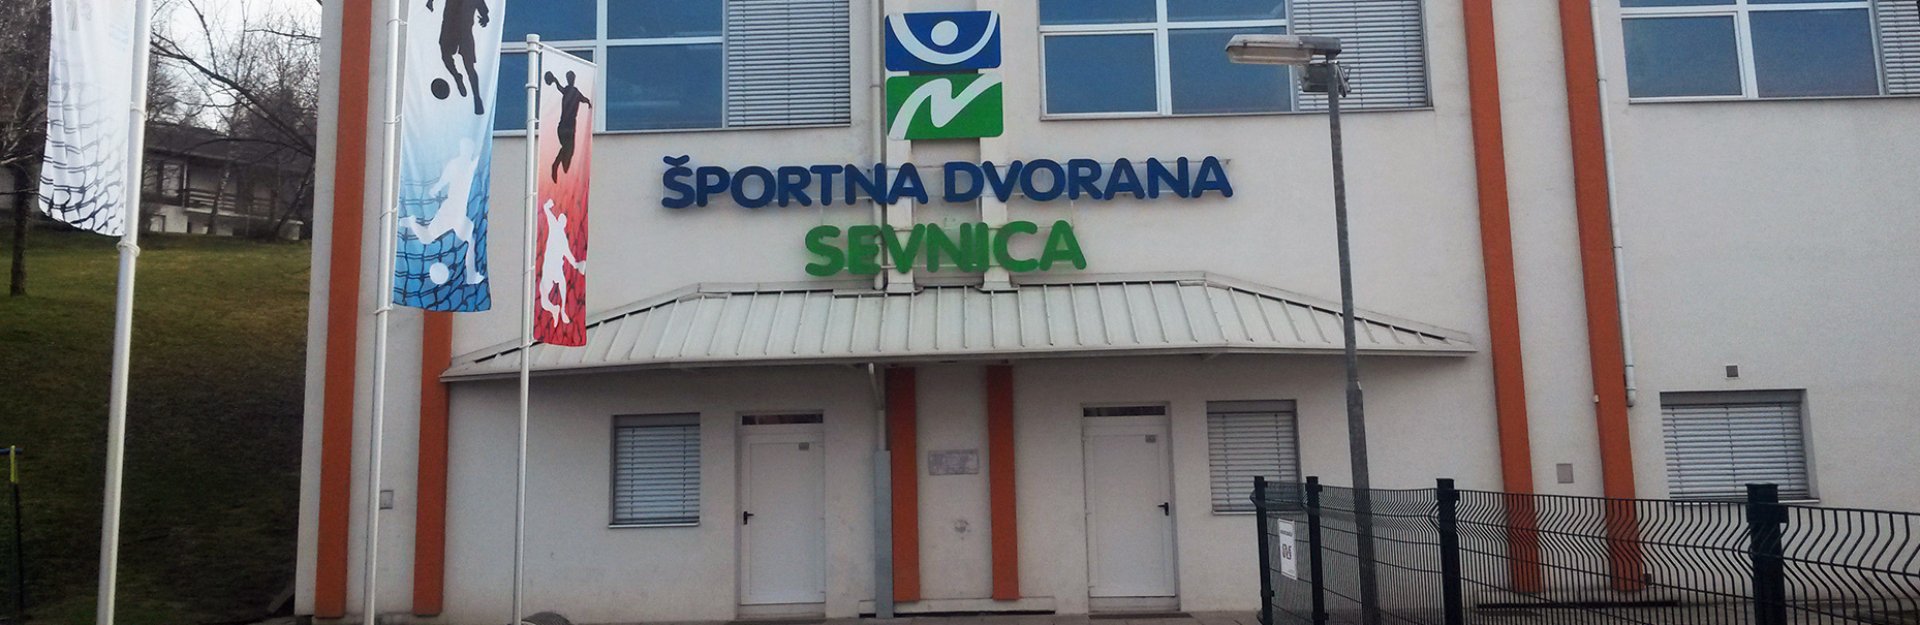 Športna dvorana Sevnica